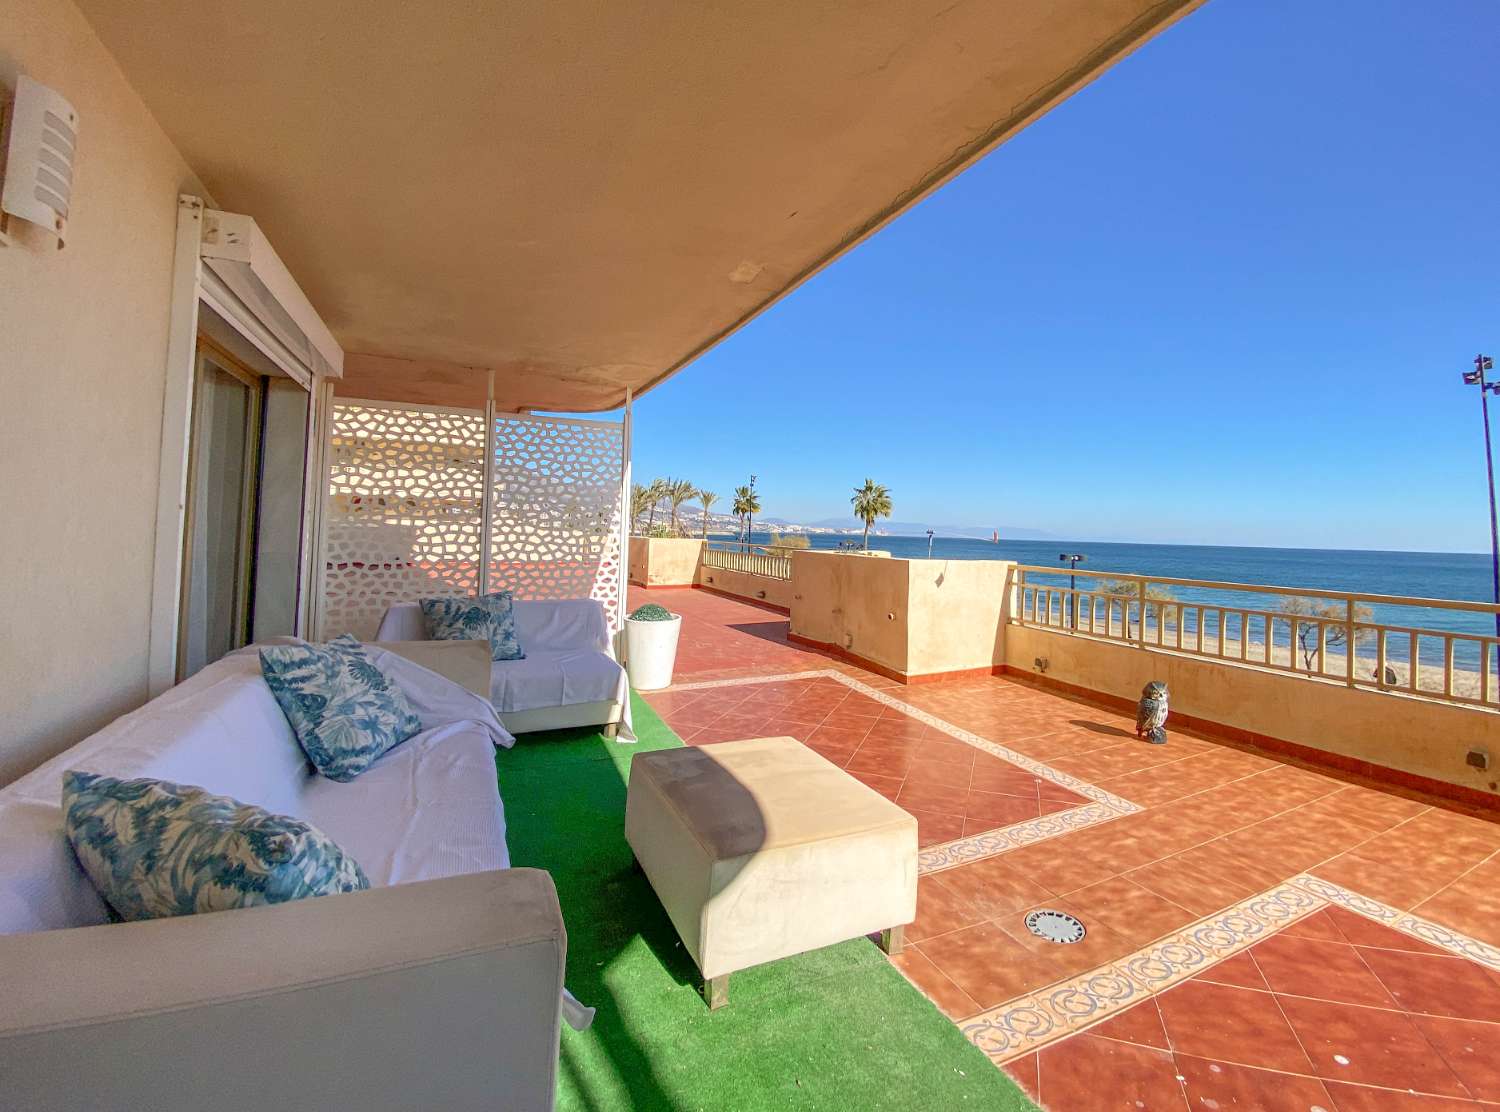 Unglaubliche Wohnung am Meer mit großer Terrasse von 300 qm.